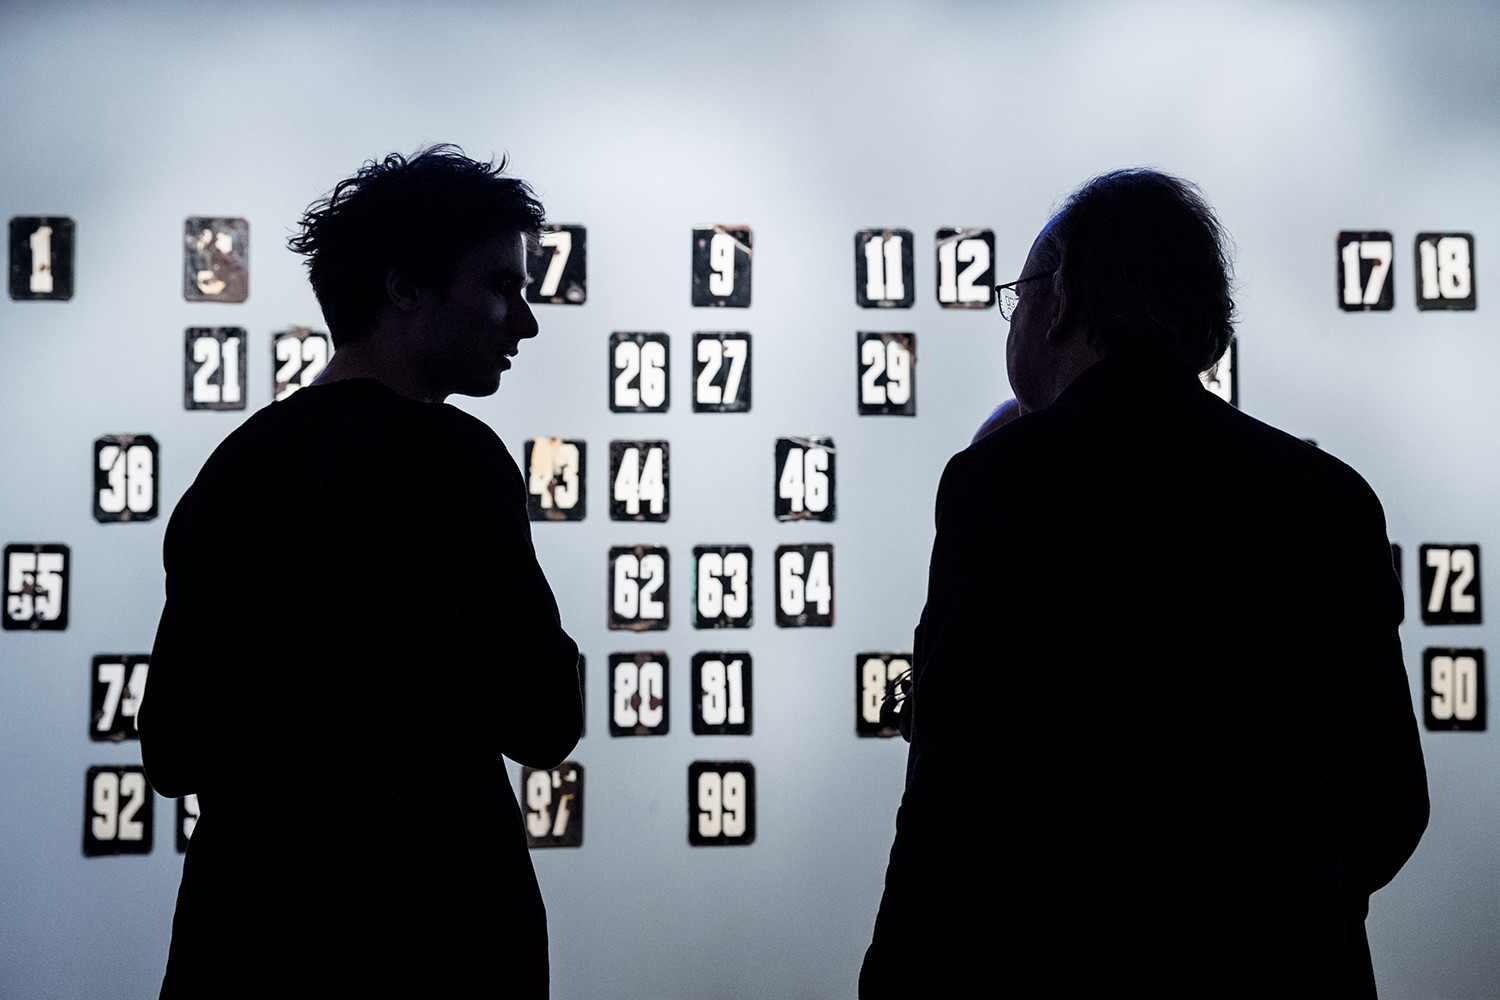 アスラン・ガイスモフの作品「数字」は第11回カンディンスキー賞のファイナルに出た3つの作品のリストに入った。映画館「ウダルニク」で行なわれたカンディンスキー賞のセレモニーの前、彼の作品と一緒に撮影された。2017年12月15日